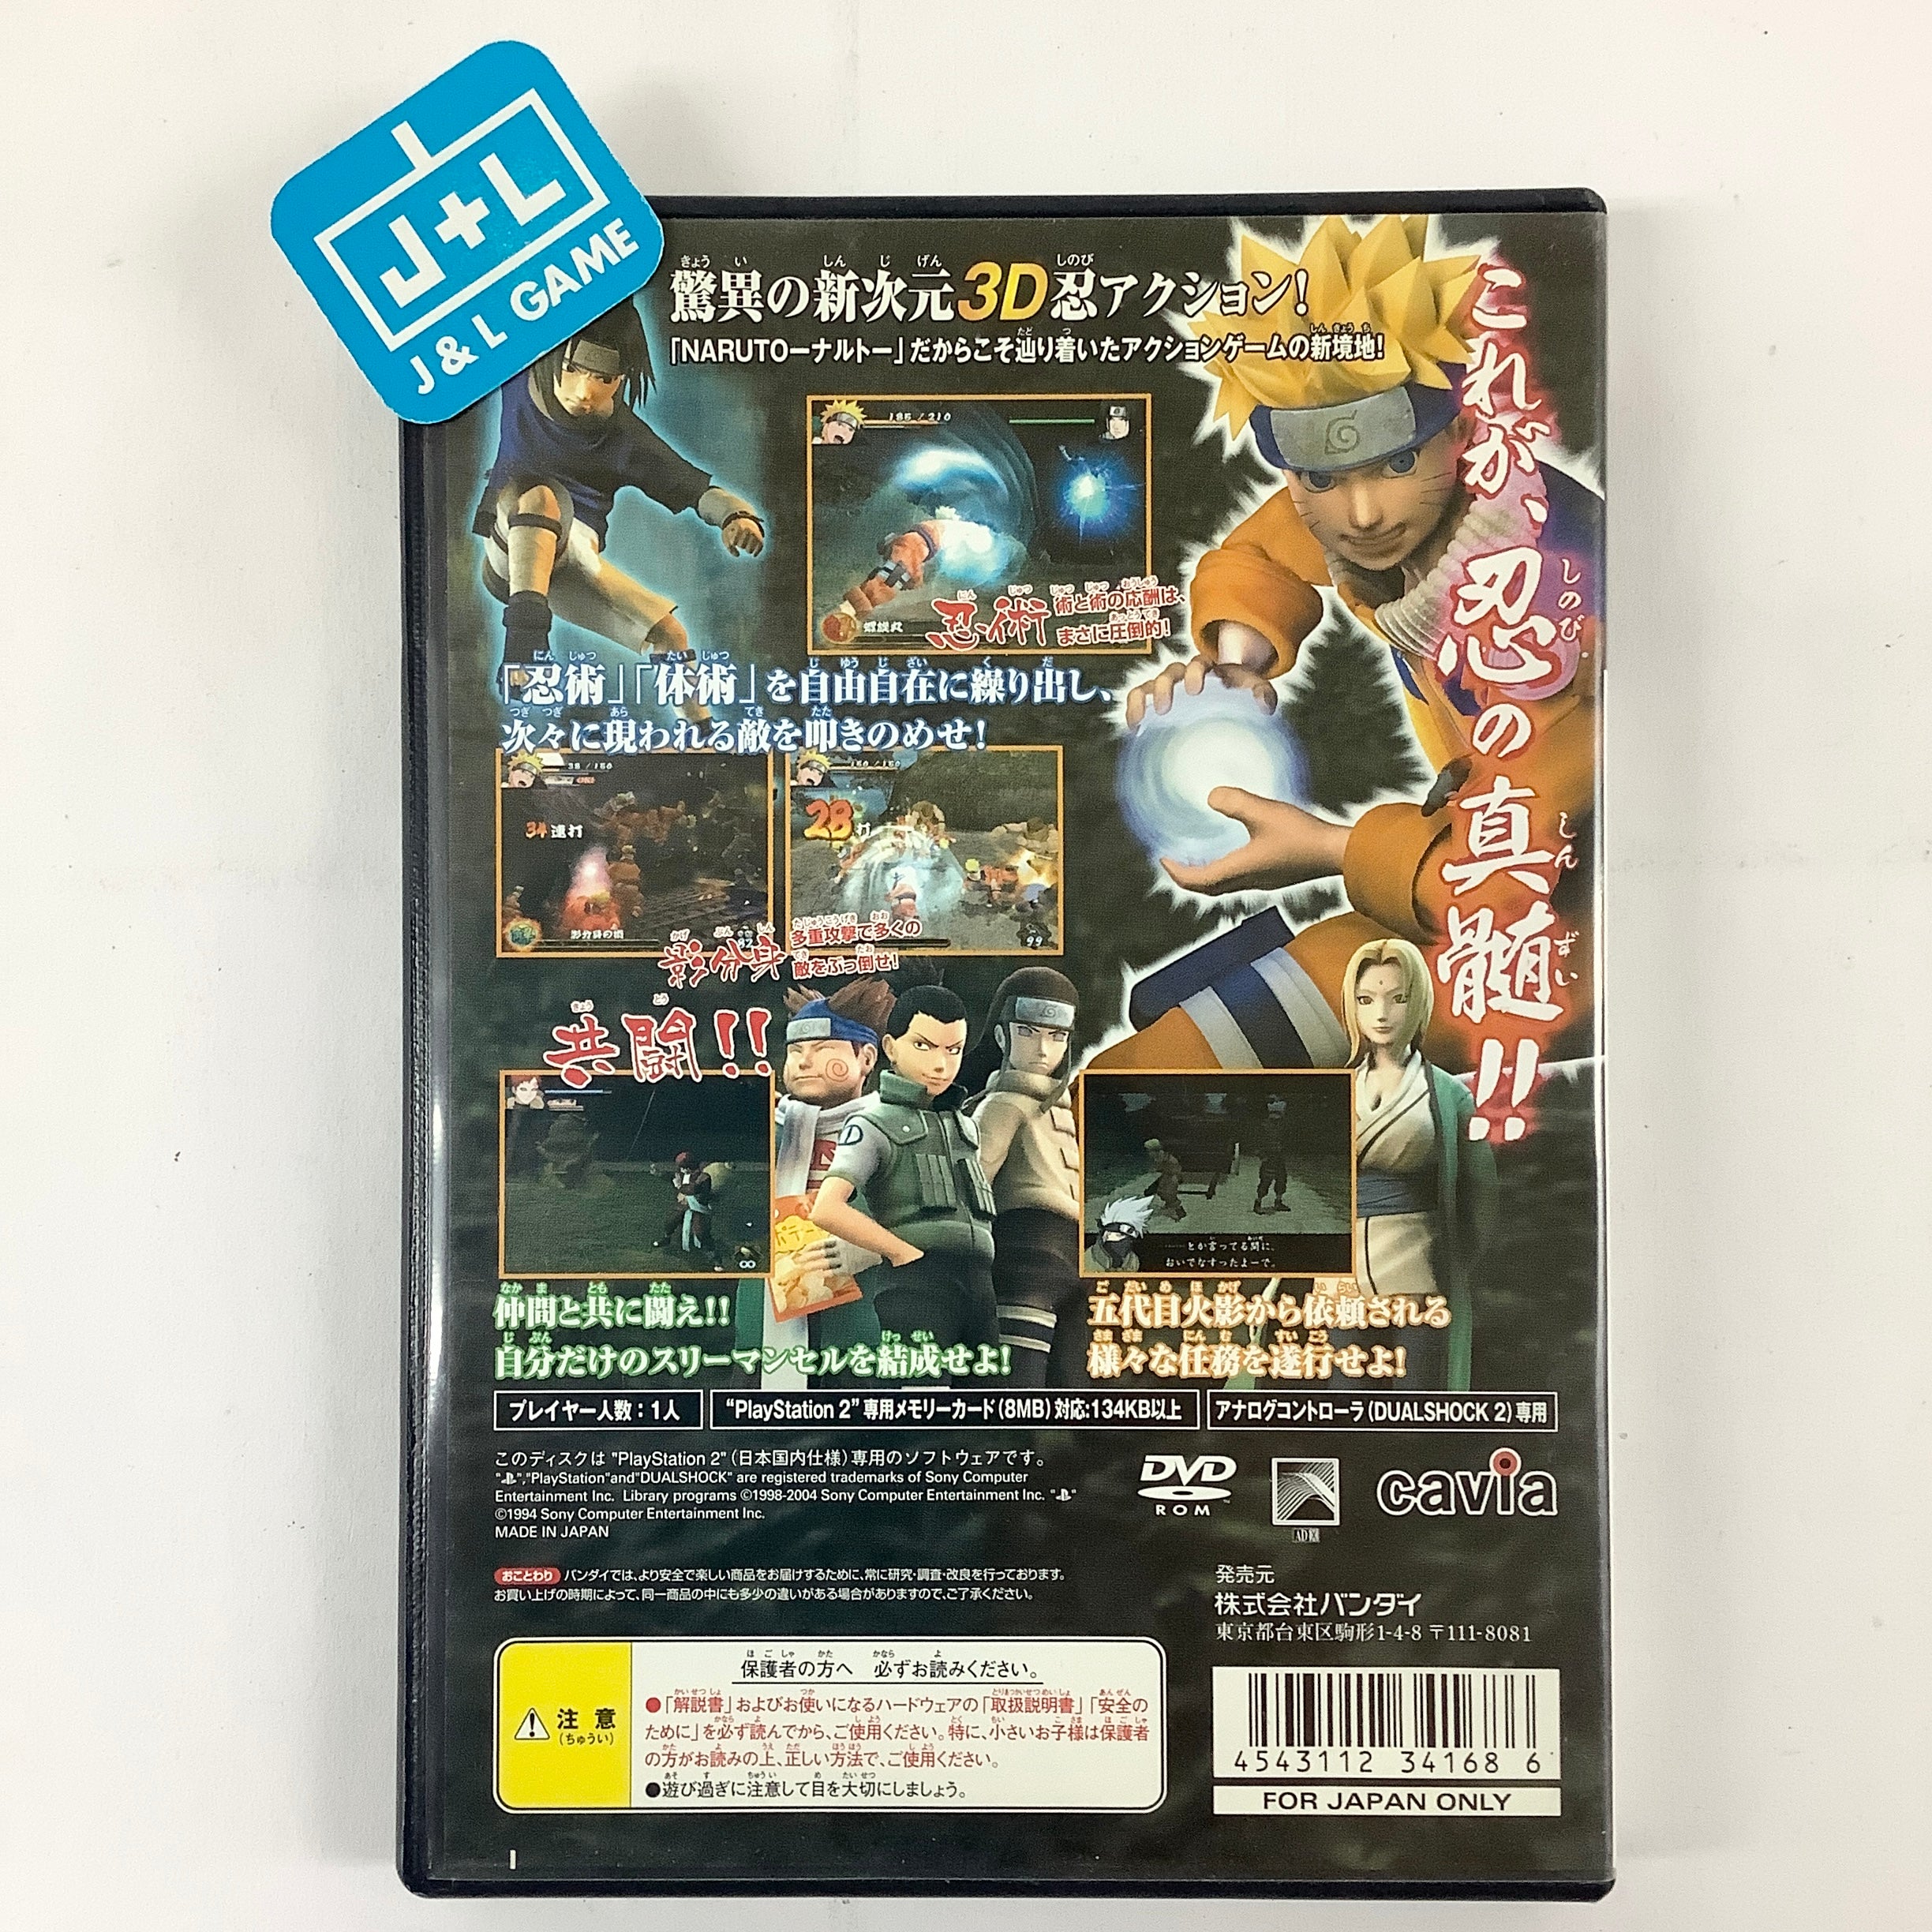 Naruto: Uzumaki Ninden - (PS2) PlayStation 2 [Pre-Owned] (Japanese Import) Video Games Bandai   